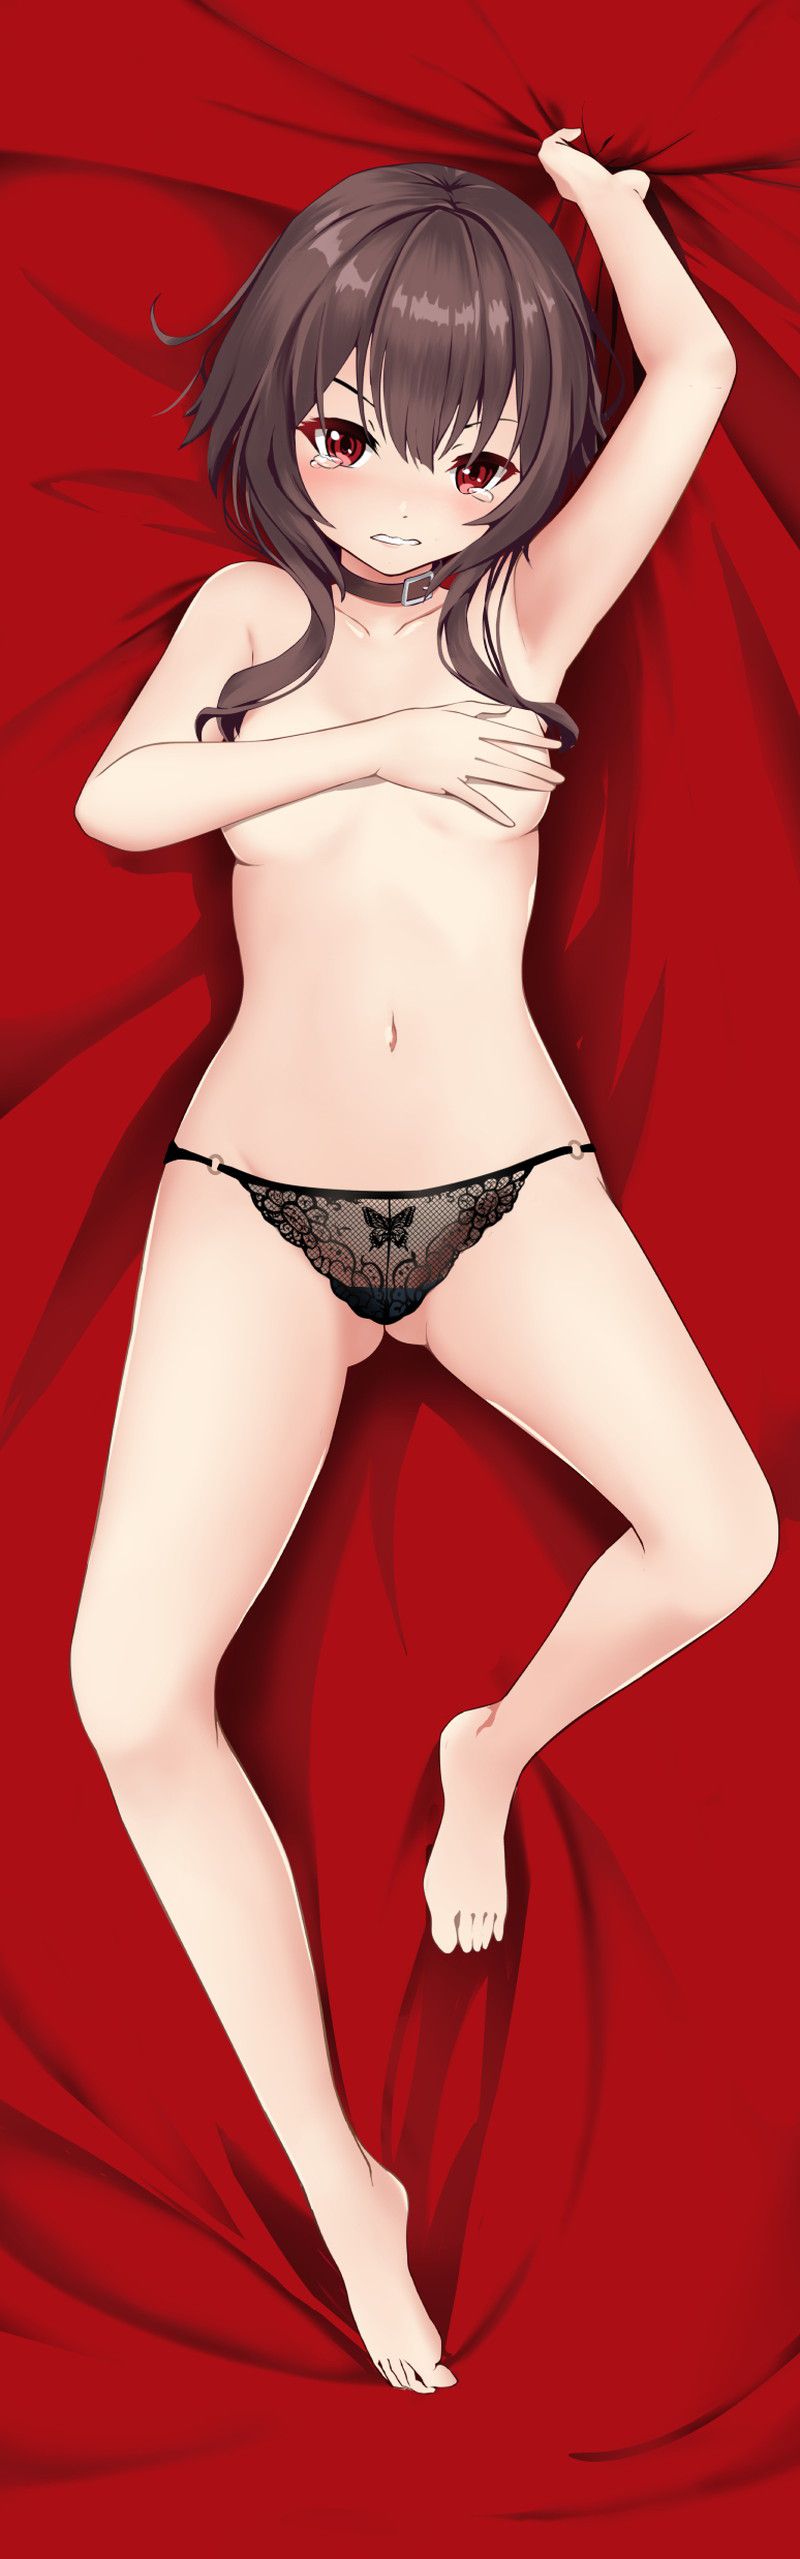 【This Syba】Megyin's Erotic Image Summary [100 Sheets] 68